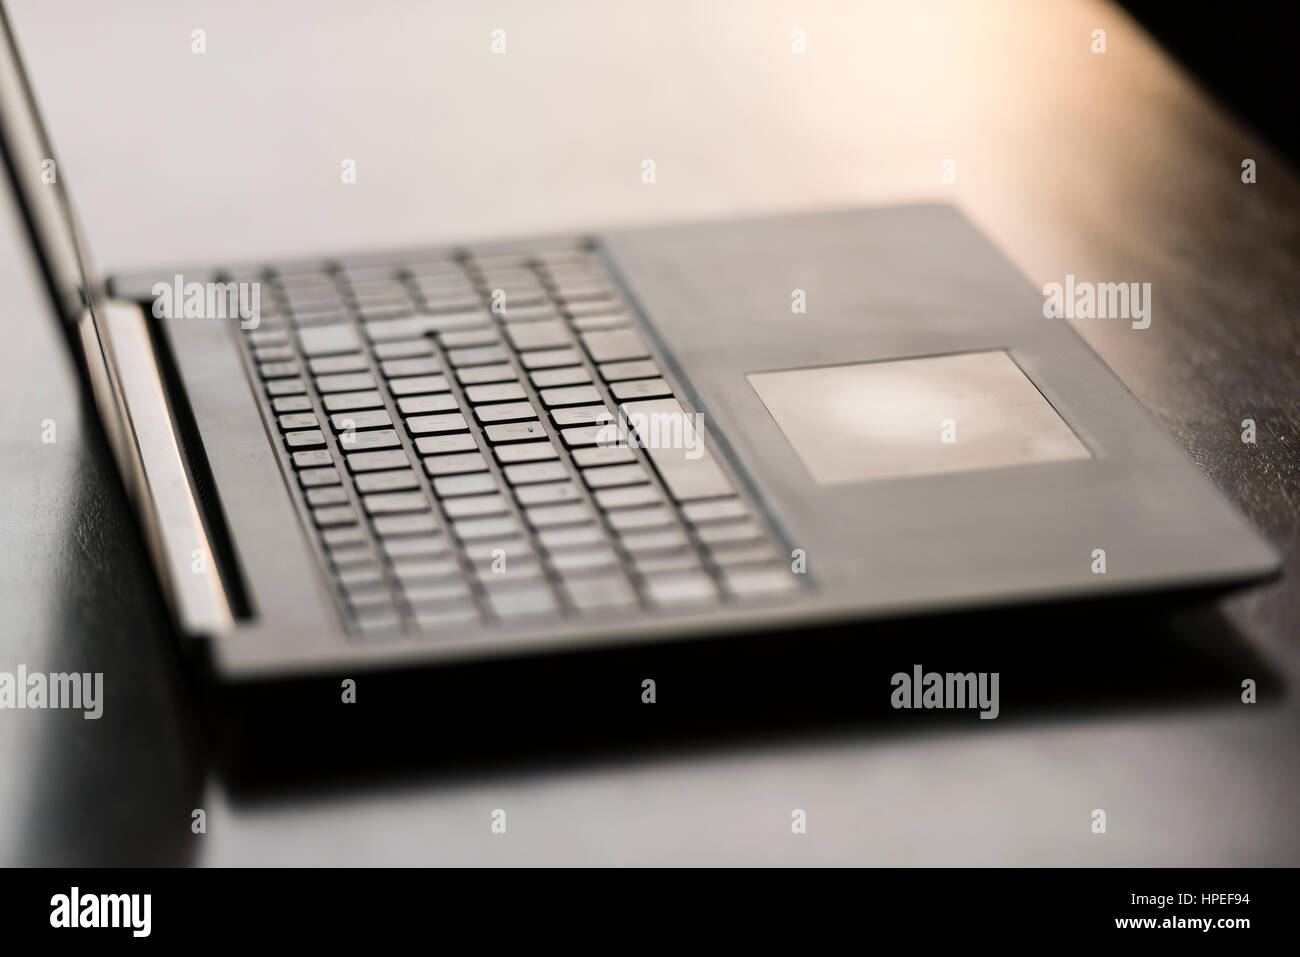 Ordinateur portable ouvert sur un bureau en bois. L'accent sur touchpad, rétro-éclairage, pas de personnes Banque D'Images